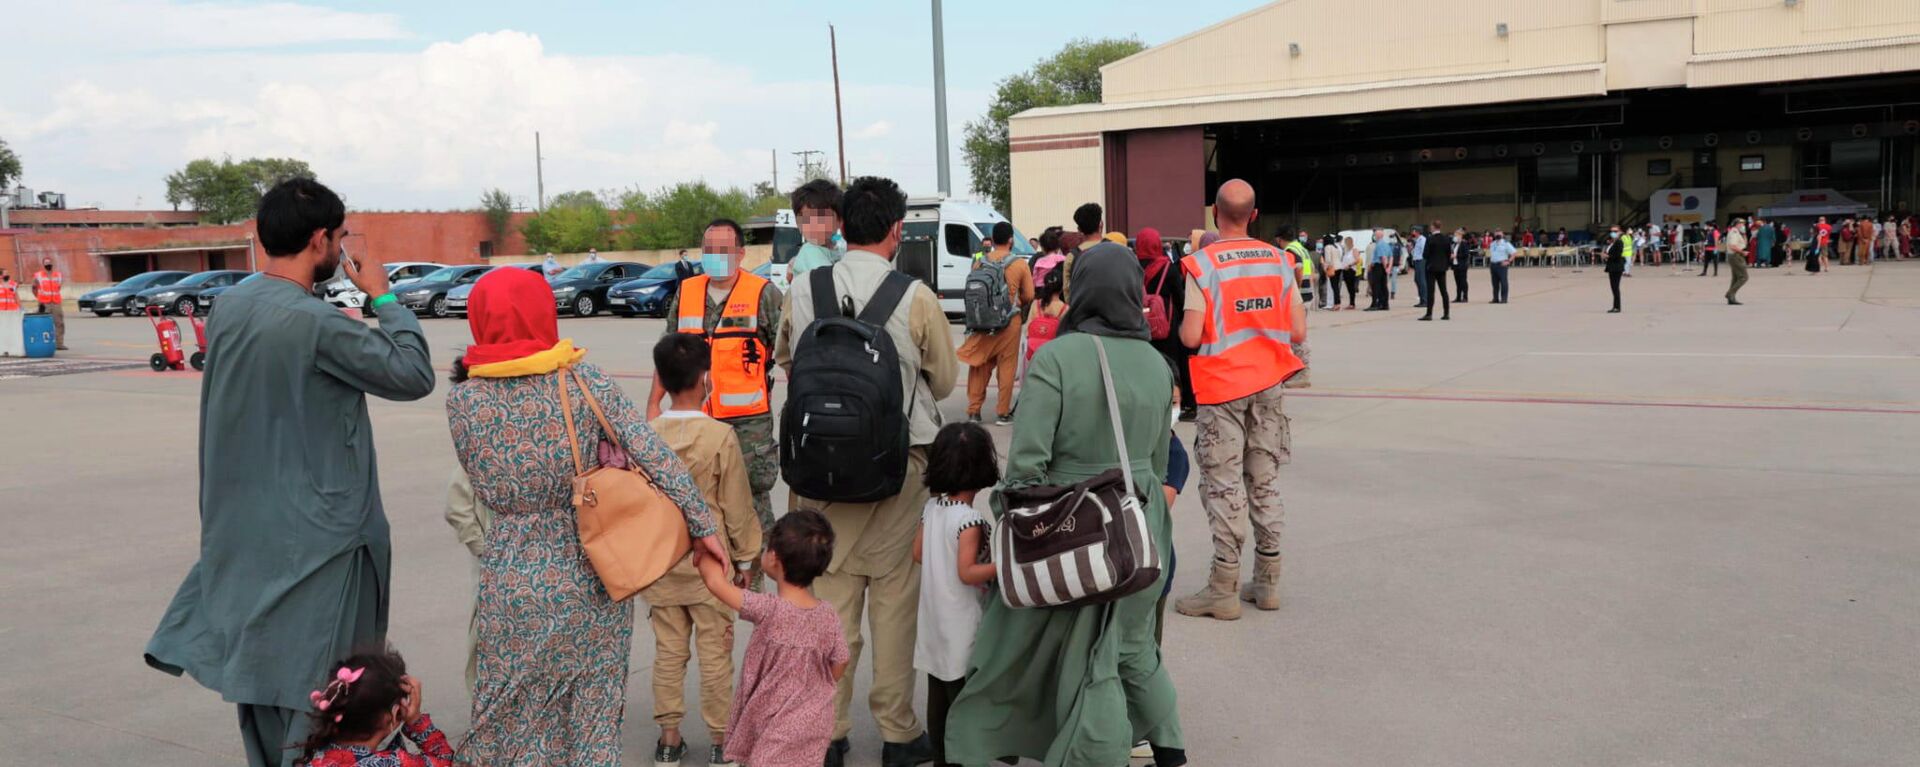 Un total de 292 personas evacuadas desde Afganistán llegan a la Base Aérea de Torrejón, a 25 de agosto de 2021, en Torrejón de Ardoz, Madrid (España) - Sputnik Mundo, 1920, 25.08.2021